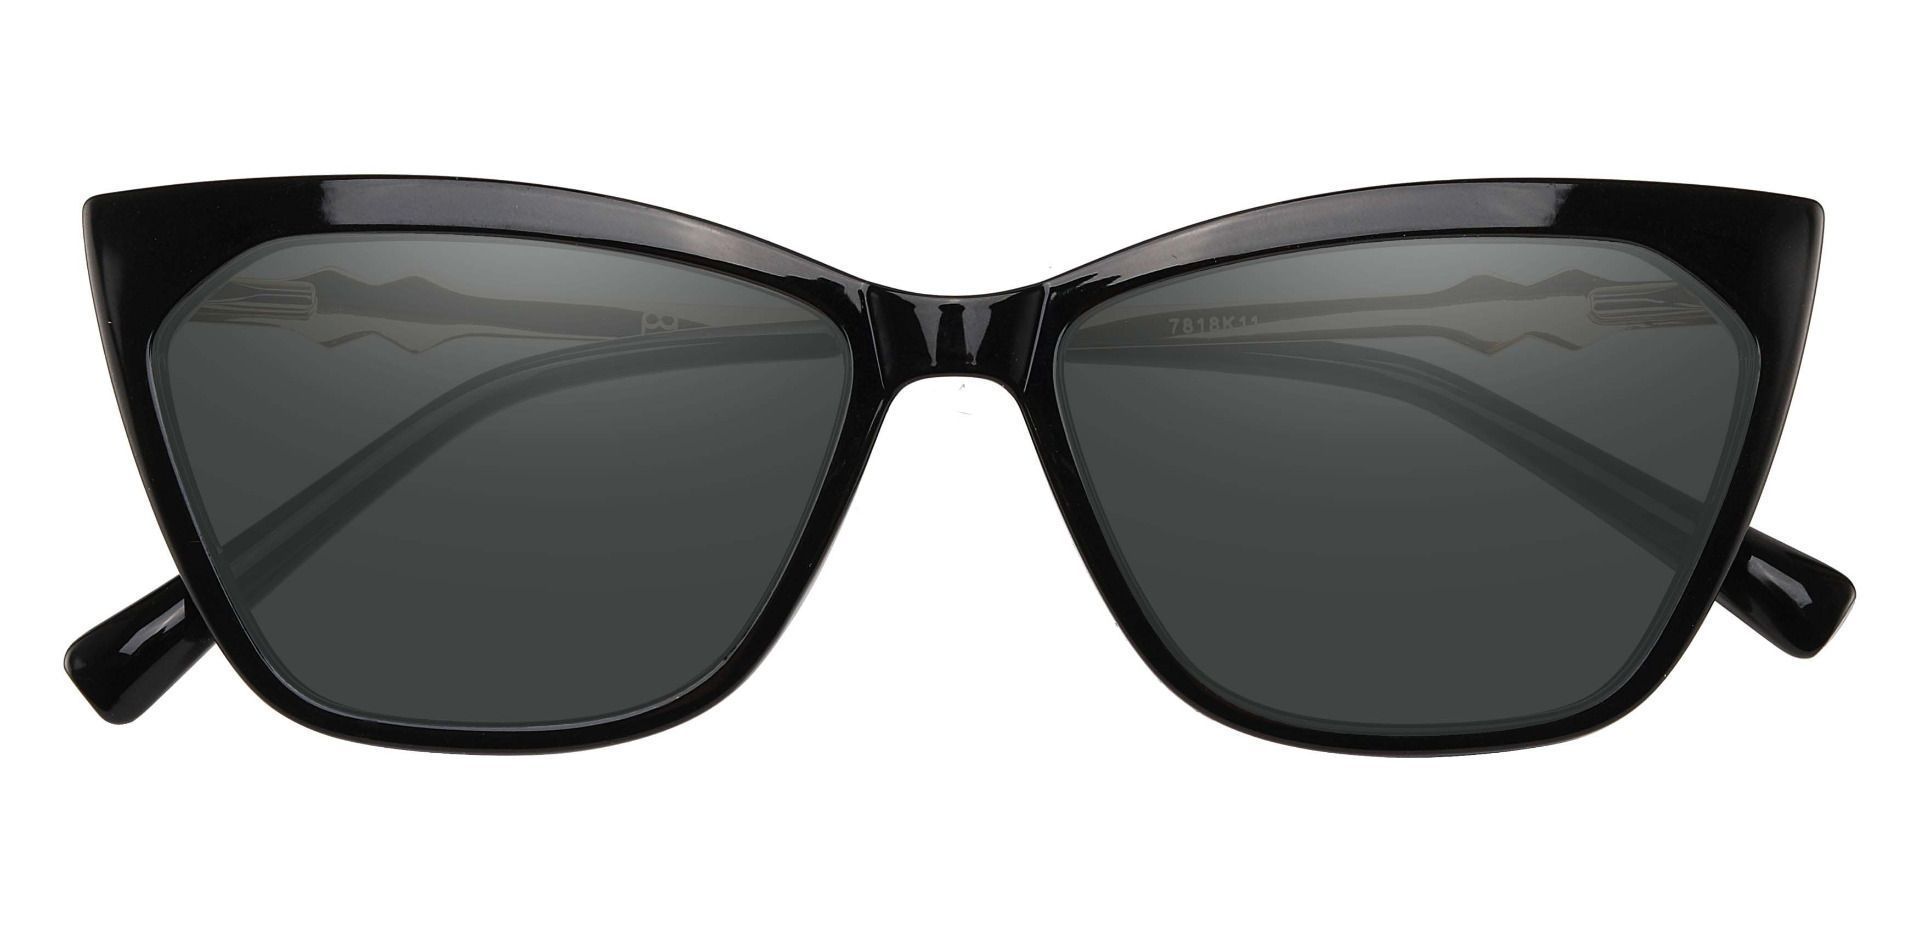 Addison Cat Eye Reading Sunglasses - Black Frame With Gray Lenses